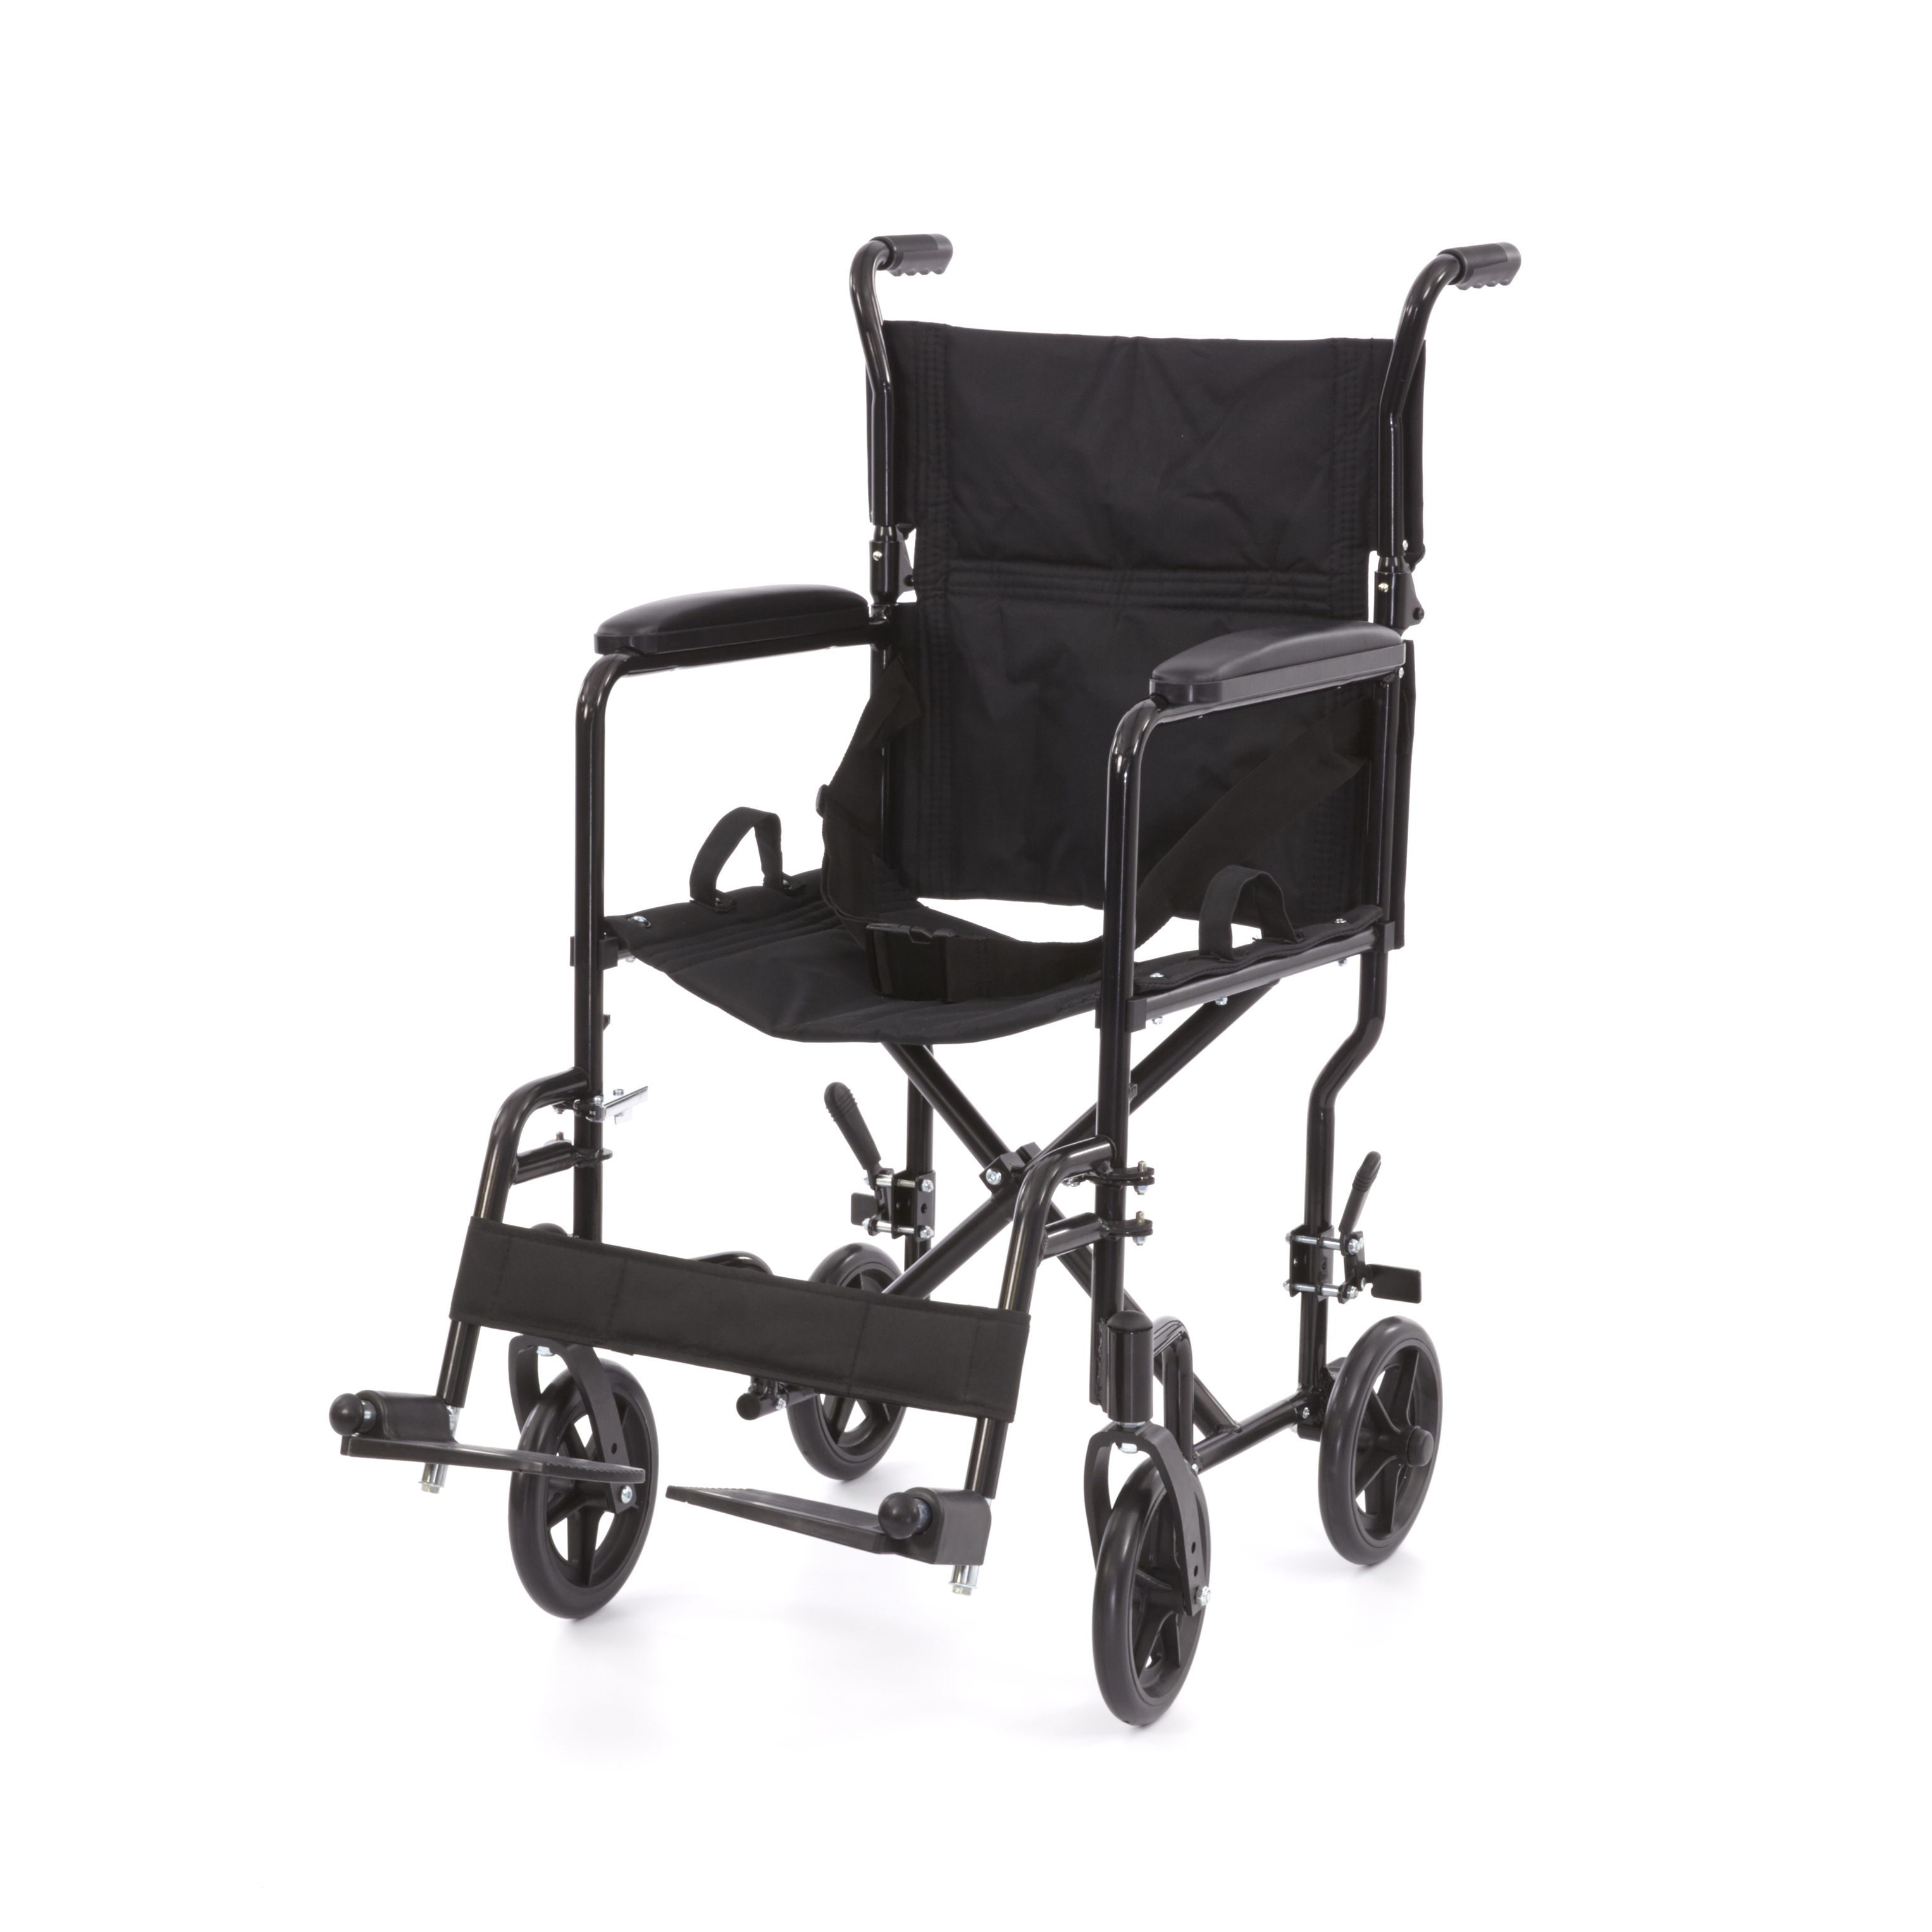 WHE-02-BLACK Romed faltbare aluminium Transportstuhl mit faltbare Rückenlehne, feste Armlehne und klappbare Fußrasten.